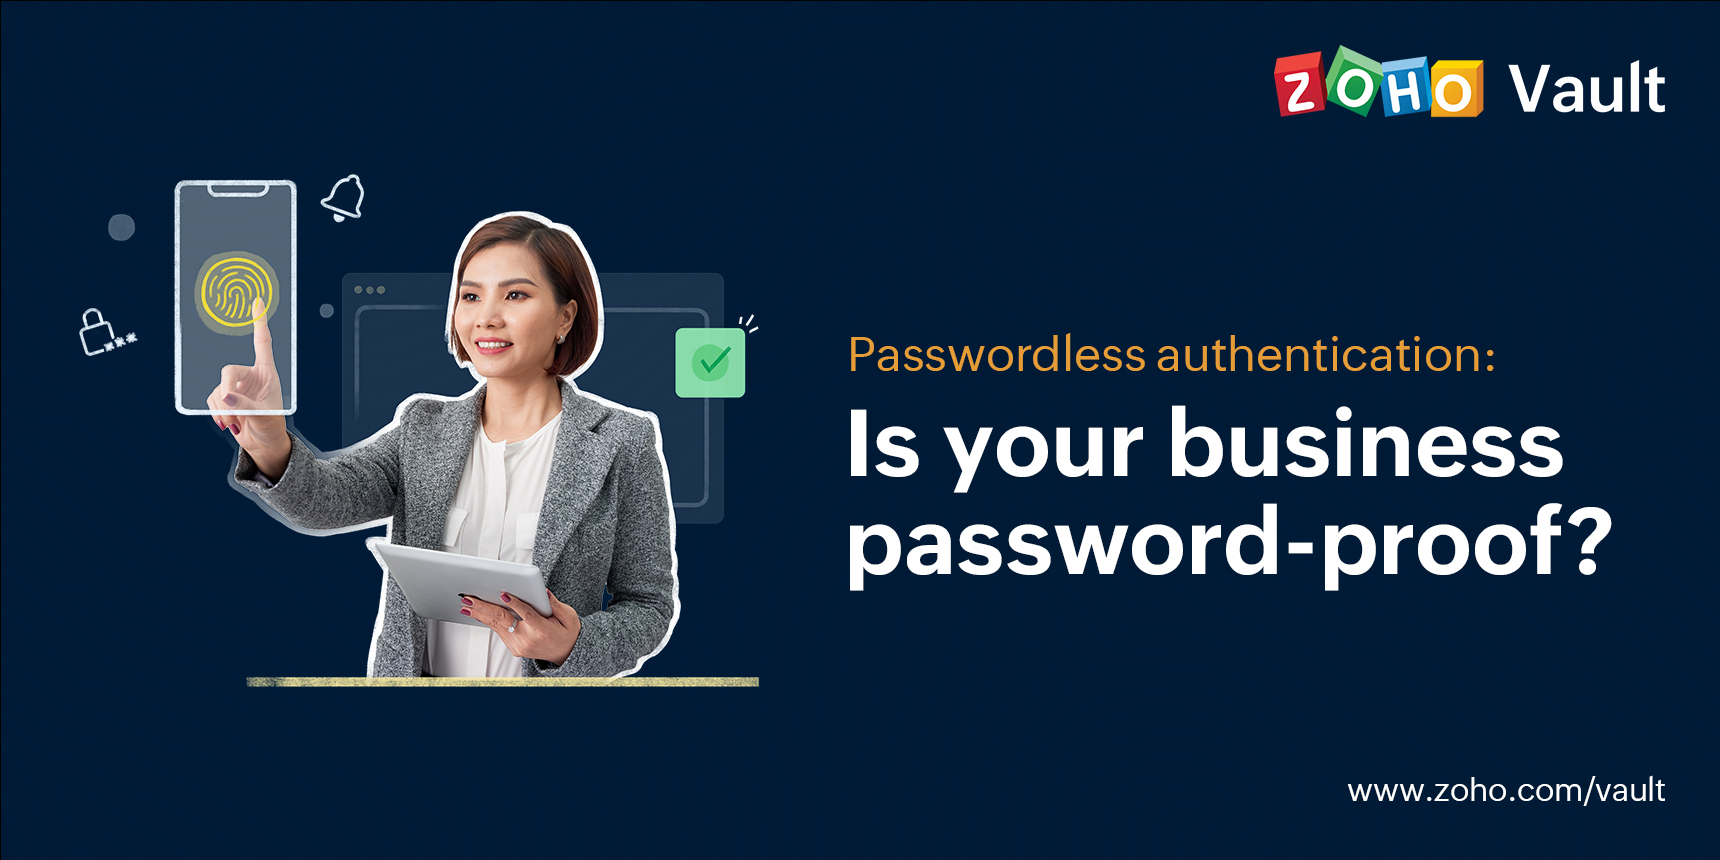 Passwordless authentication | Zoho Vault